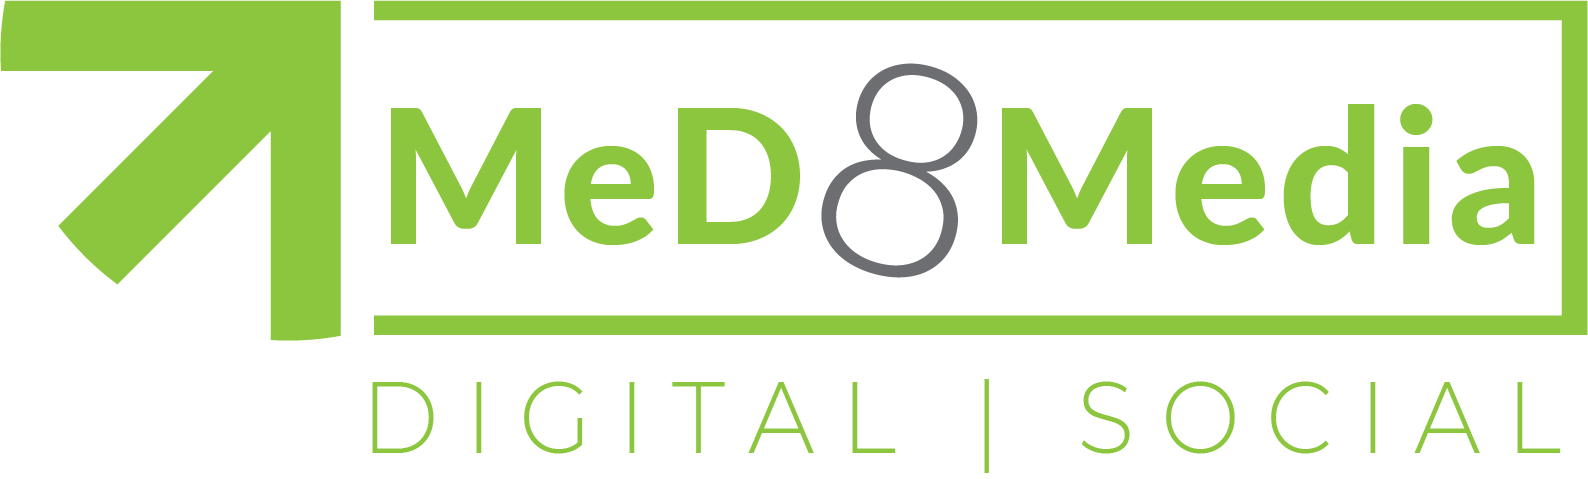 MeD8 Media